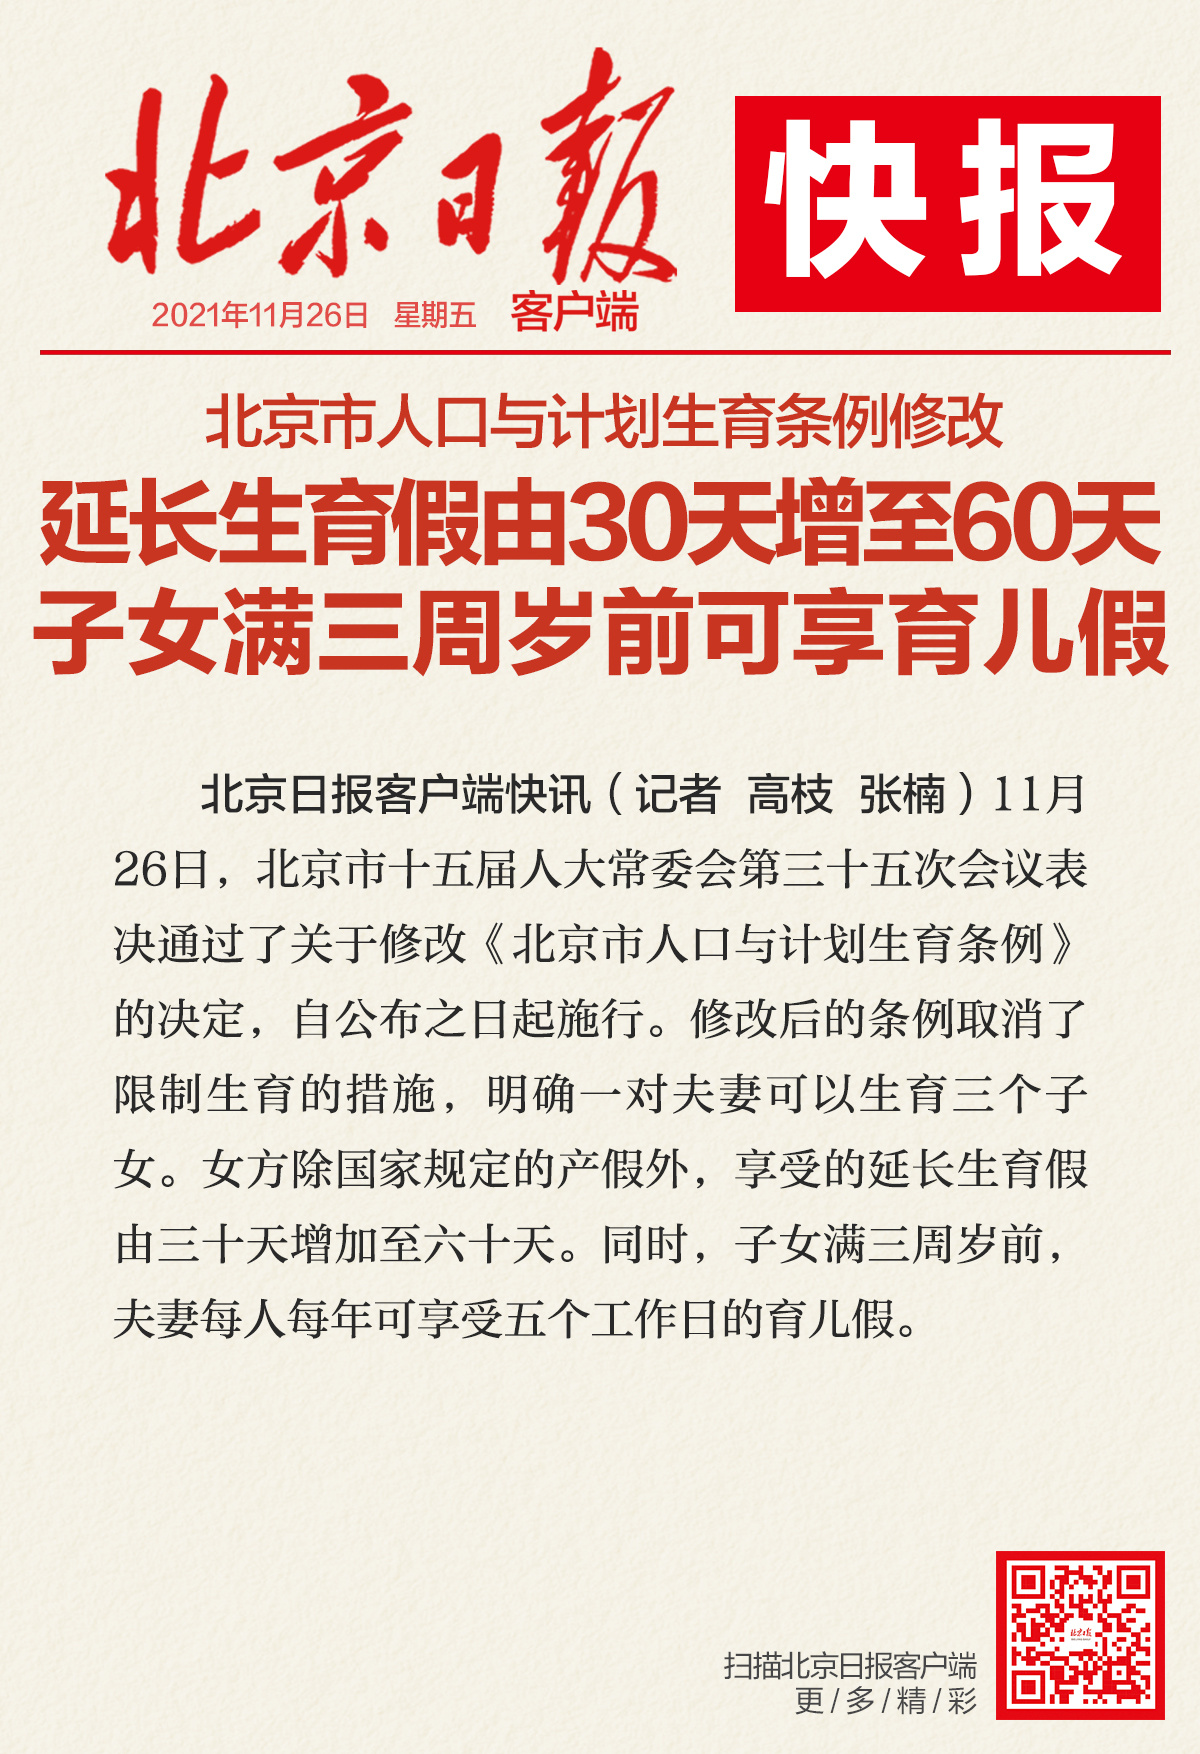 北京市人口与计划生育条例修改:设育儿假,延长生育假增至60天